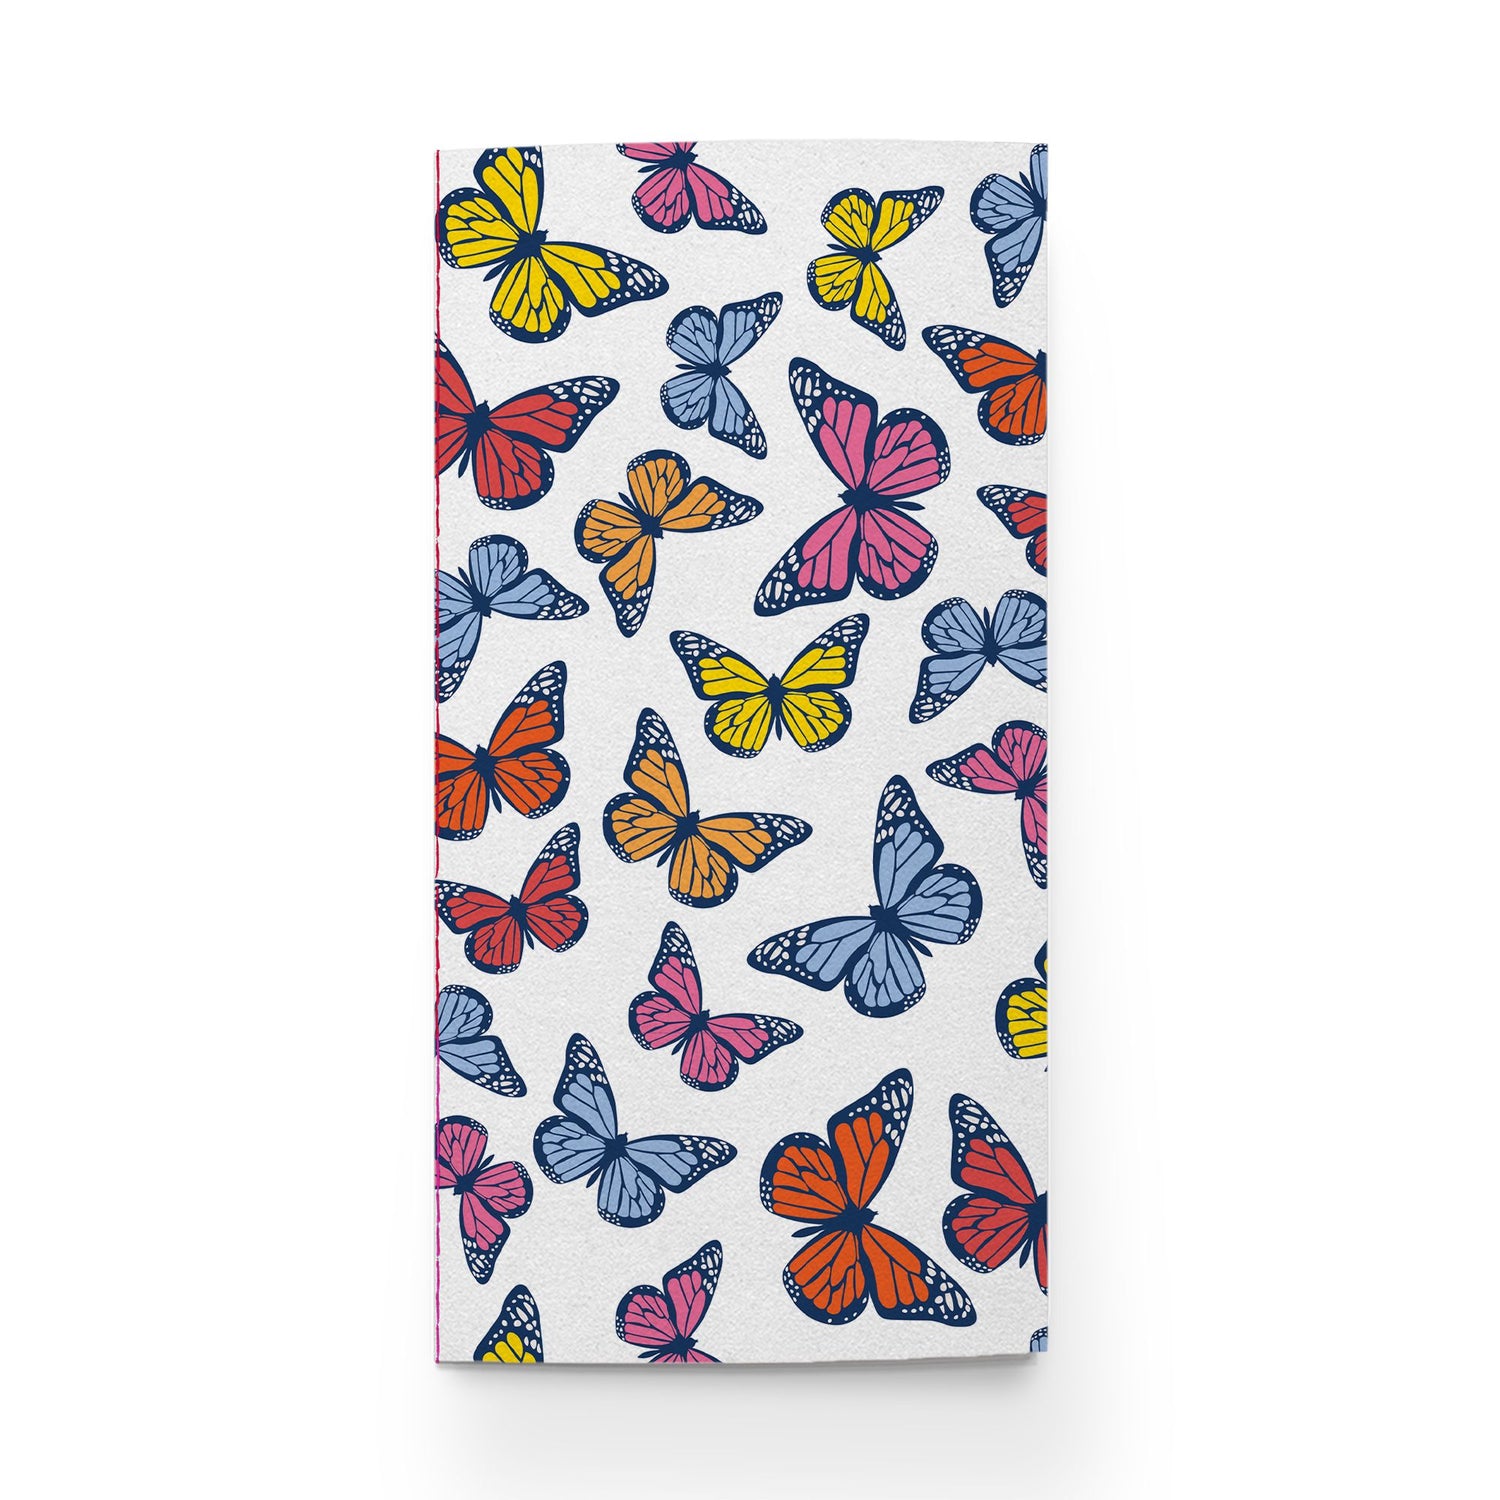 Social Butterflies Traveler Notebook